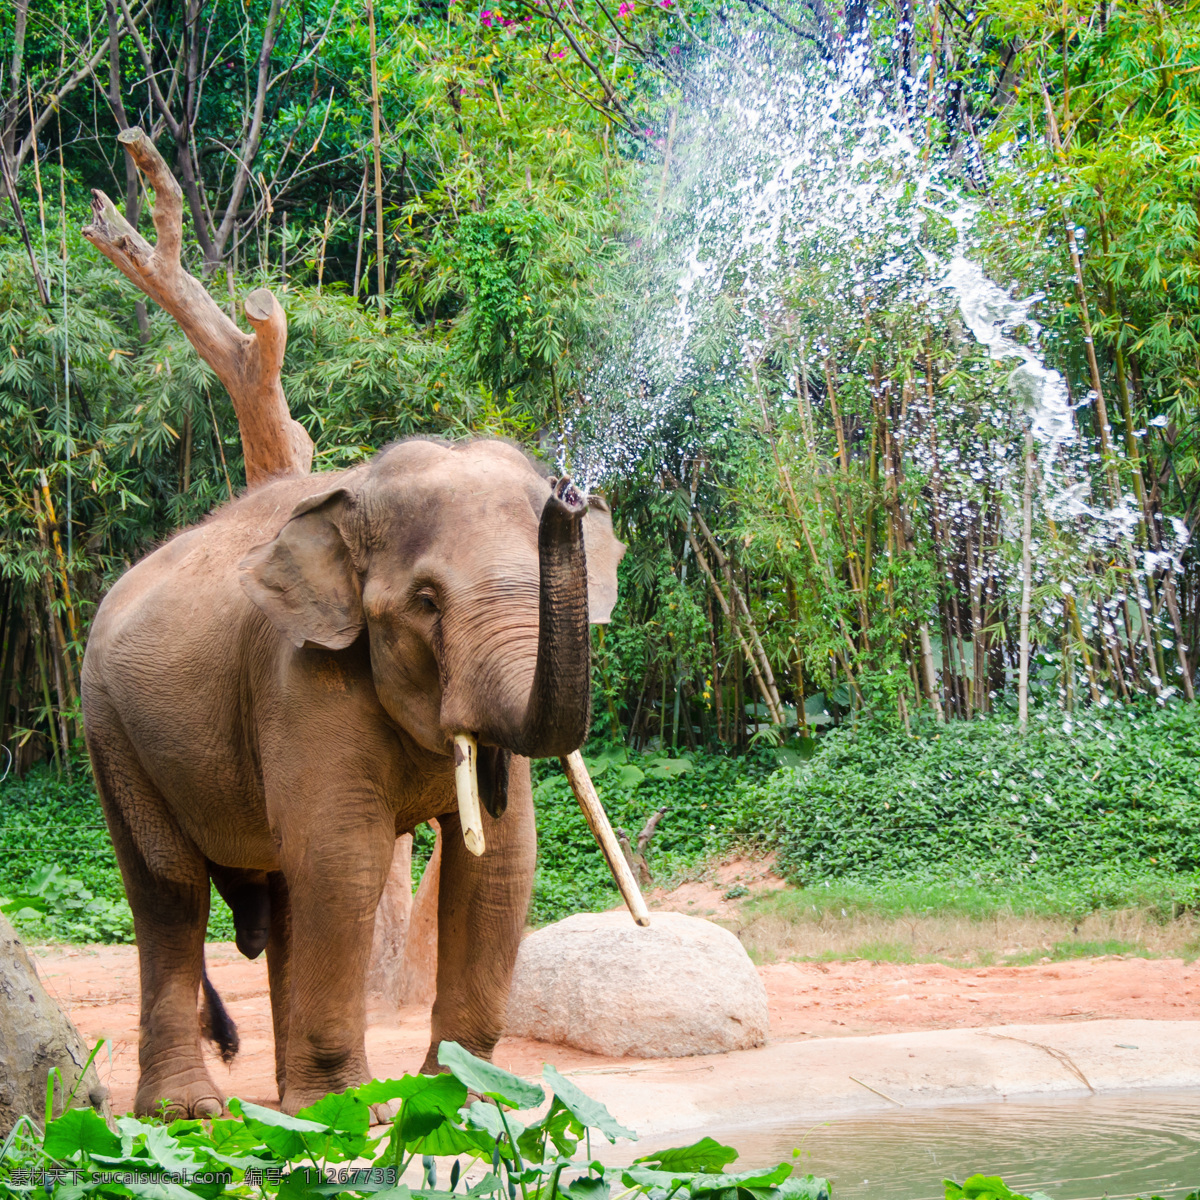 鼻子 喷水 大象 象 鼻子喷水 野生动物 动物世界 陆地动物 生物世界